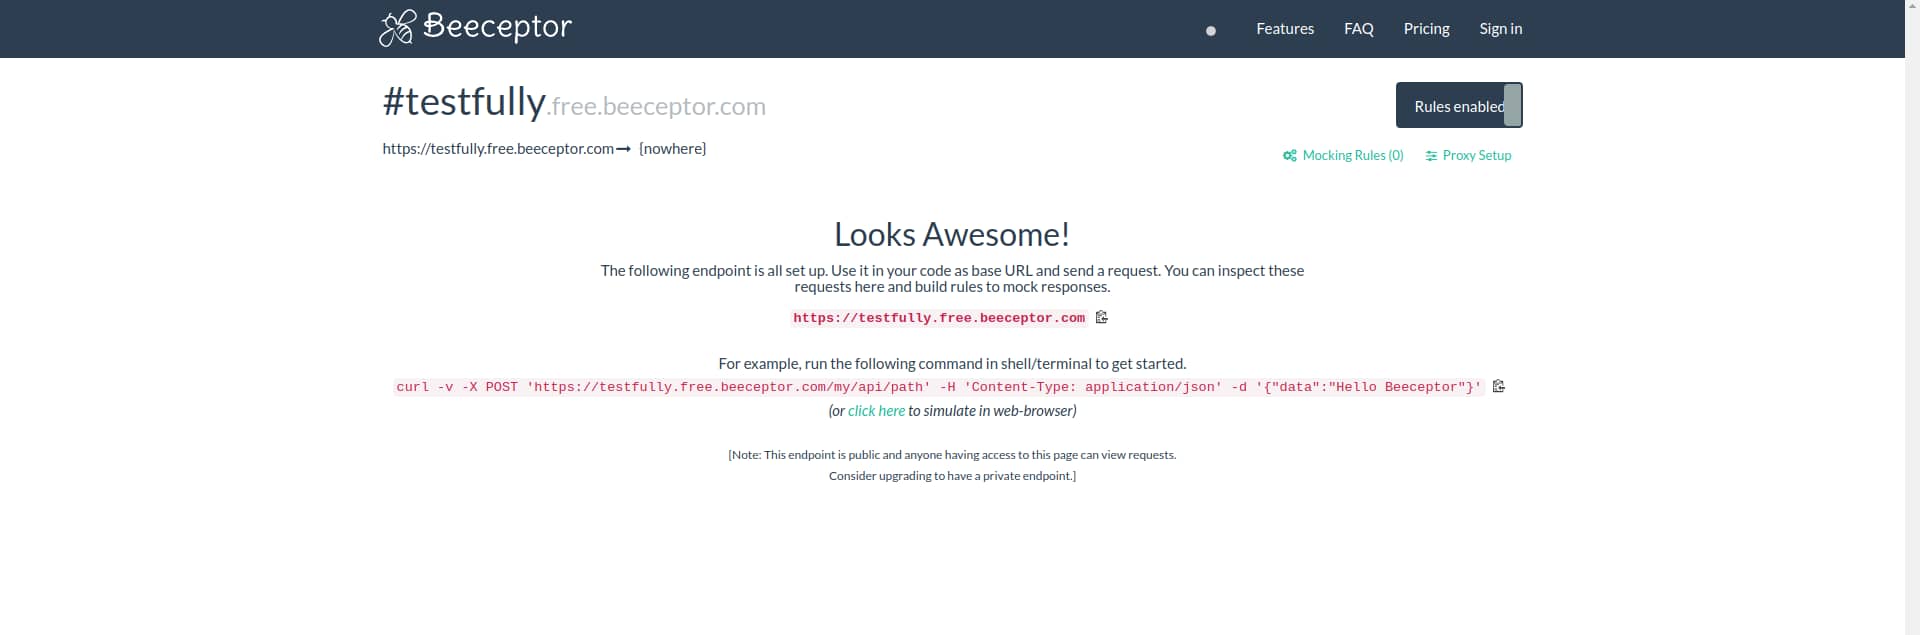 Beeceptor, a powerful mock API tool